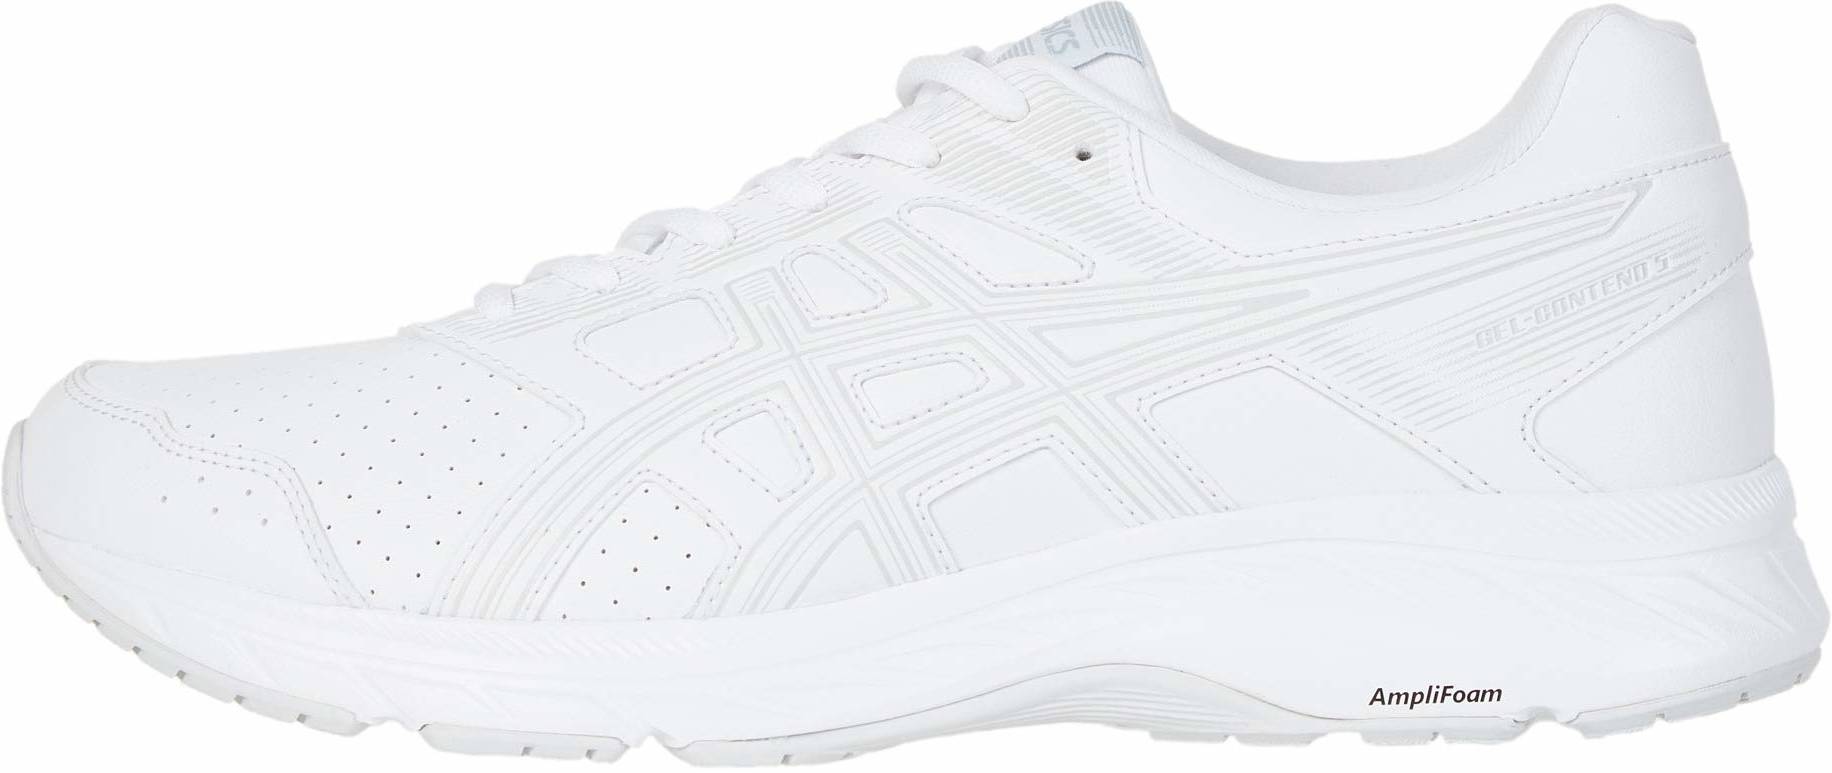 all white asics running shoes